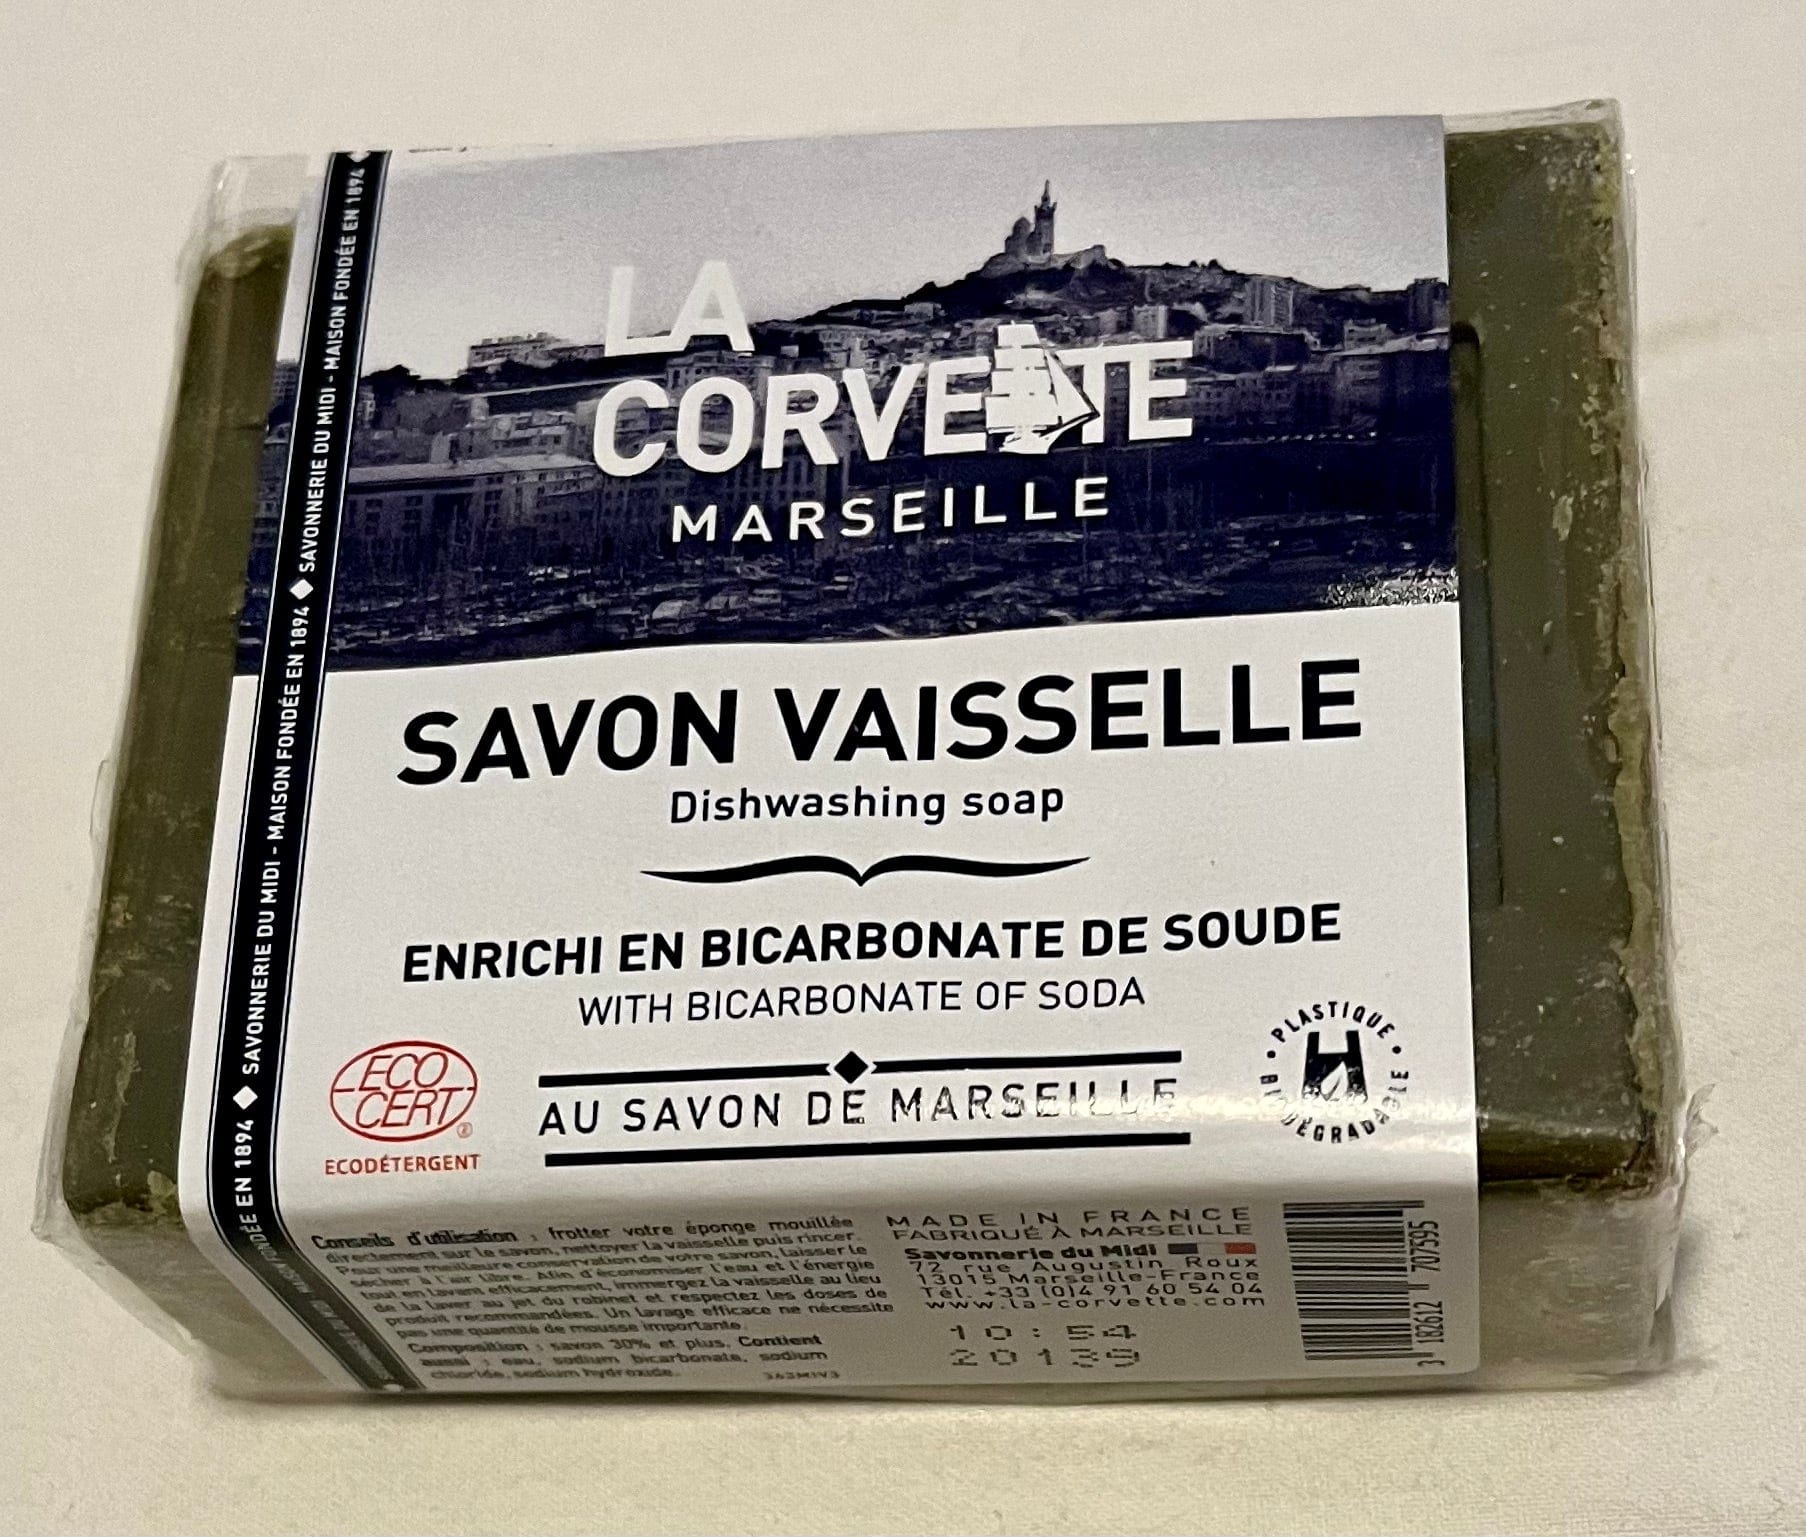 La Corvette Savon De Marseille dishwashing soap